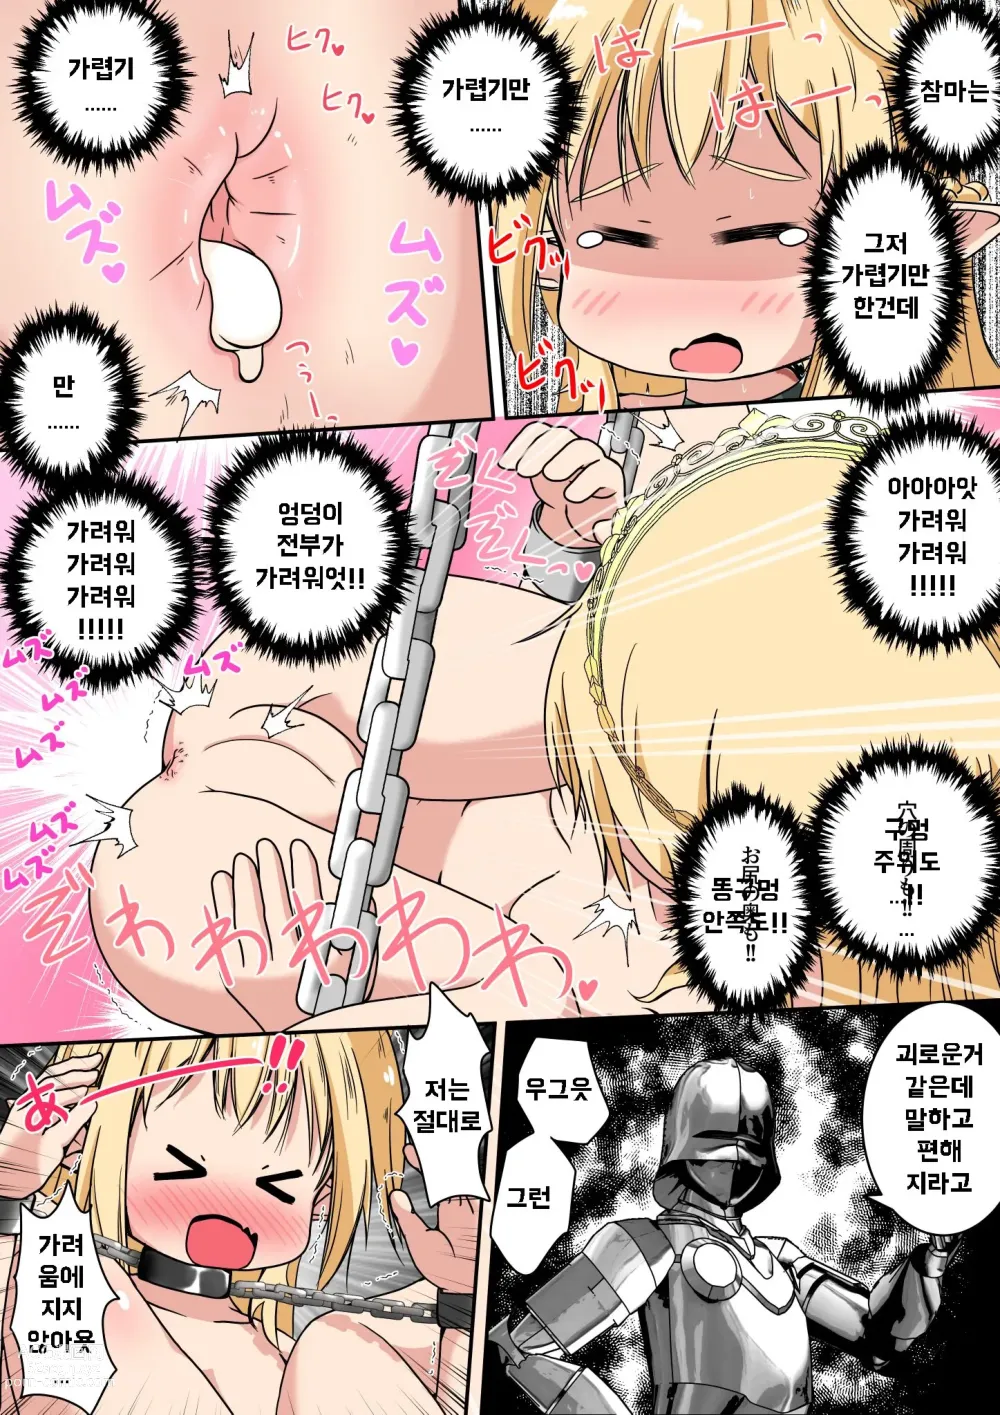 Page 5 of doujinshi 엘프 아가씨의 엉덩이 구멍에 참마를 넣어주는 이야기